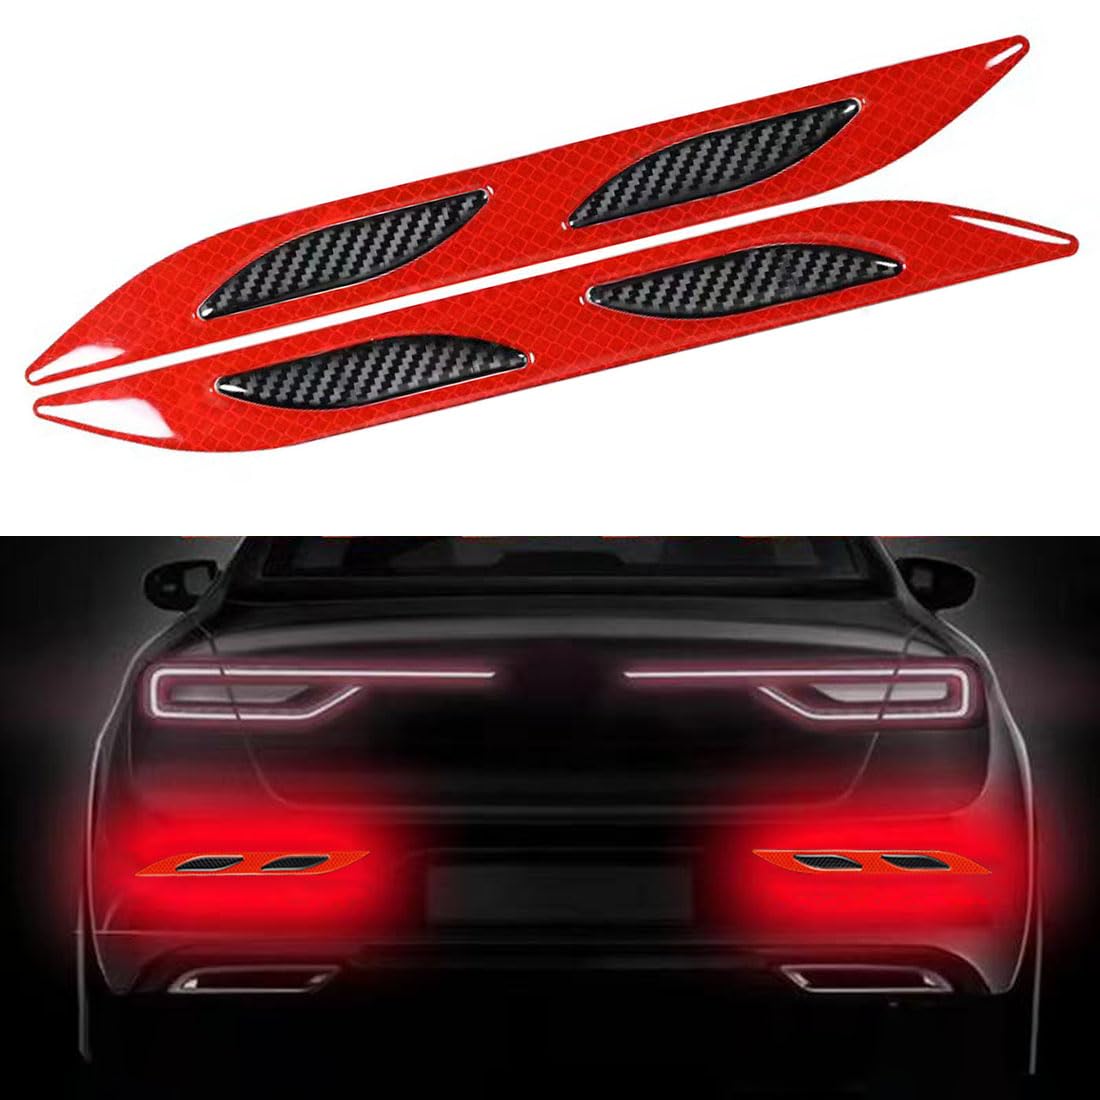 2 Stück Auto Starke reflektierende Streifen Aufkleber,Reflektierende Aufkleber für den Kofferraum,Reflektierende Sicherheits-Warnstreifen-Aufkleber für Auto,LKW, Motorrad(Rot) von Lcxecnw